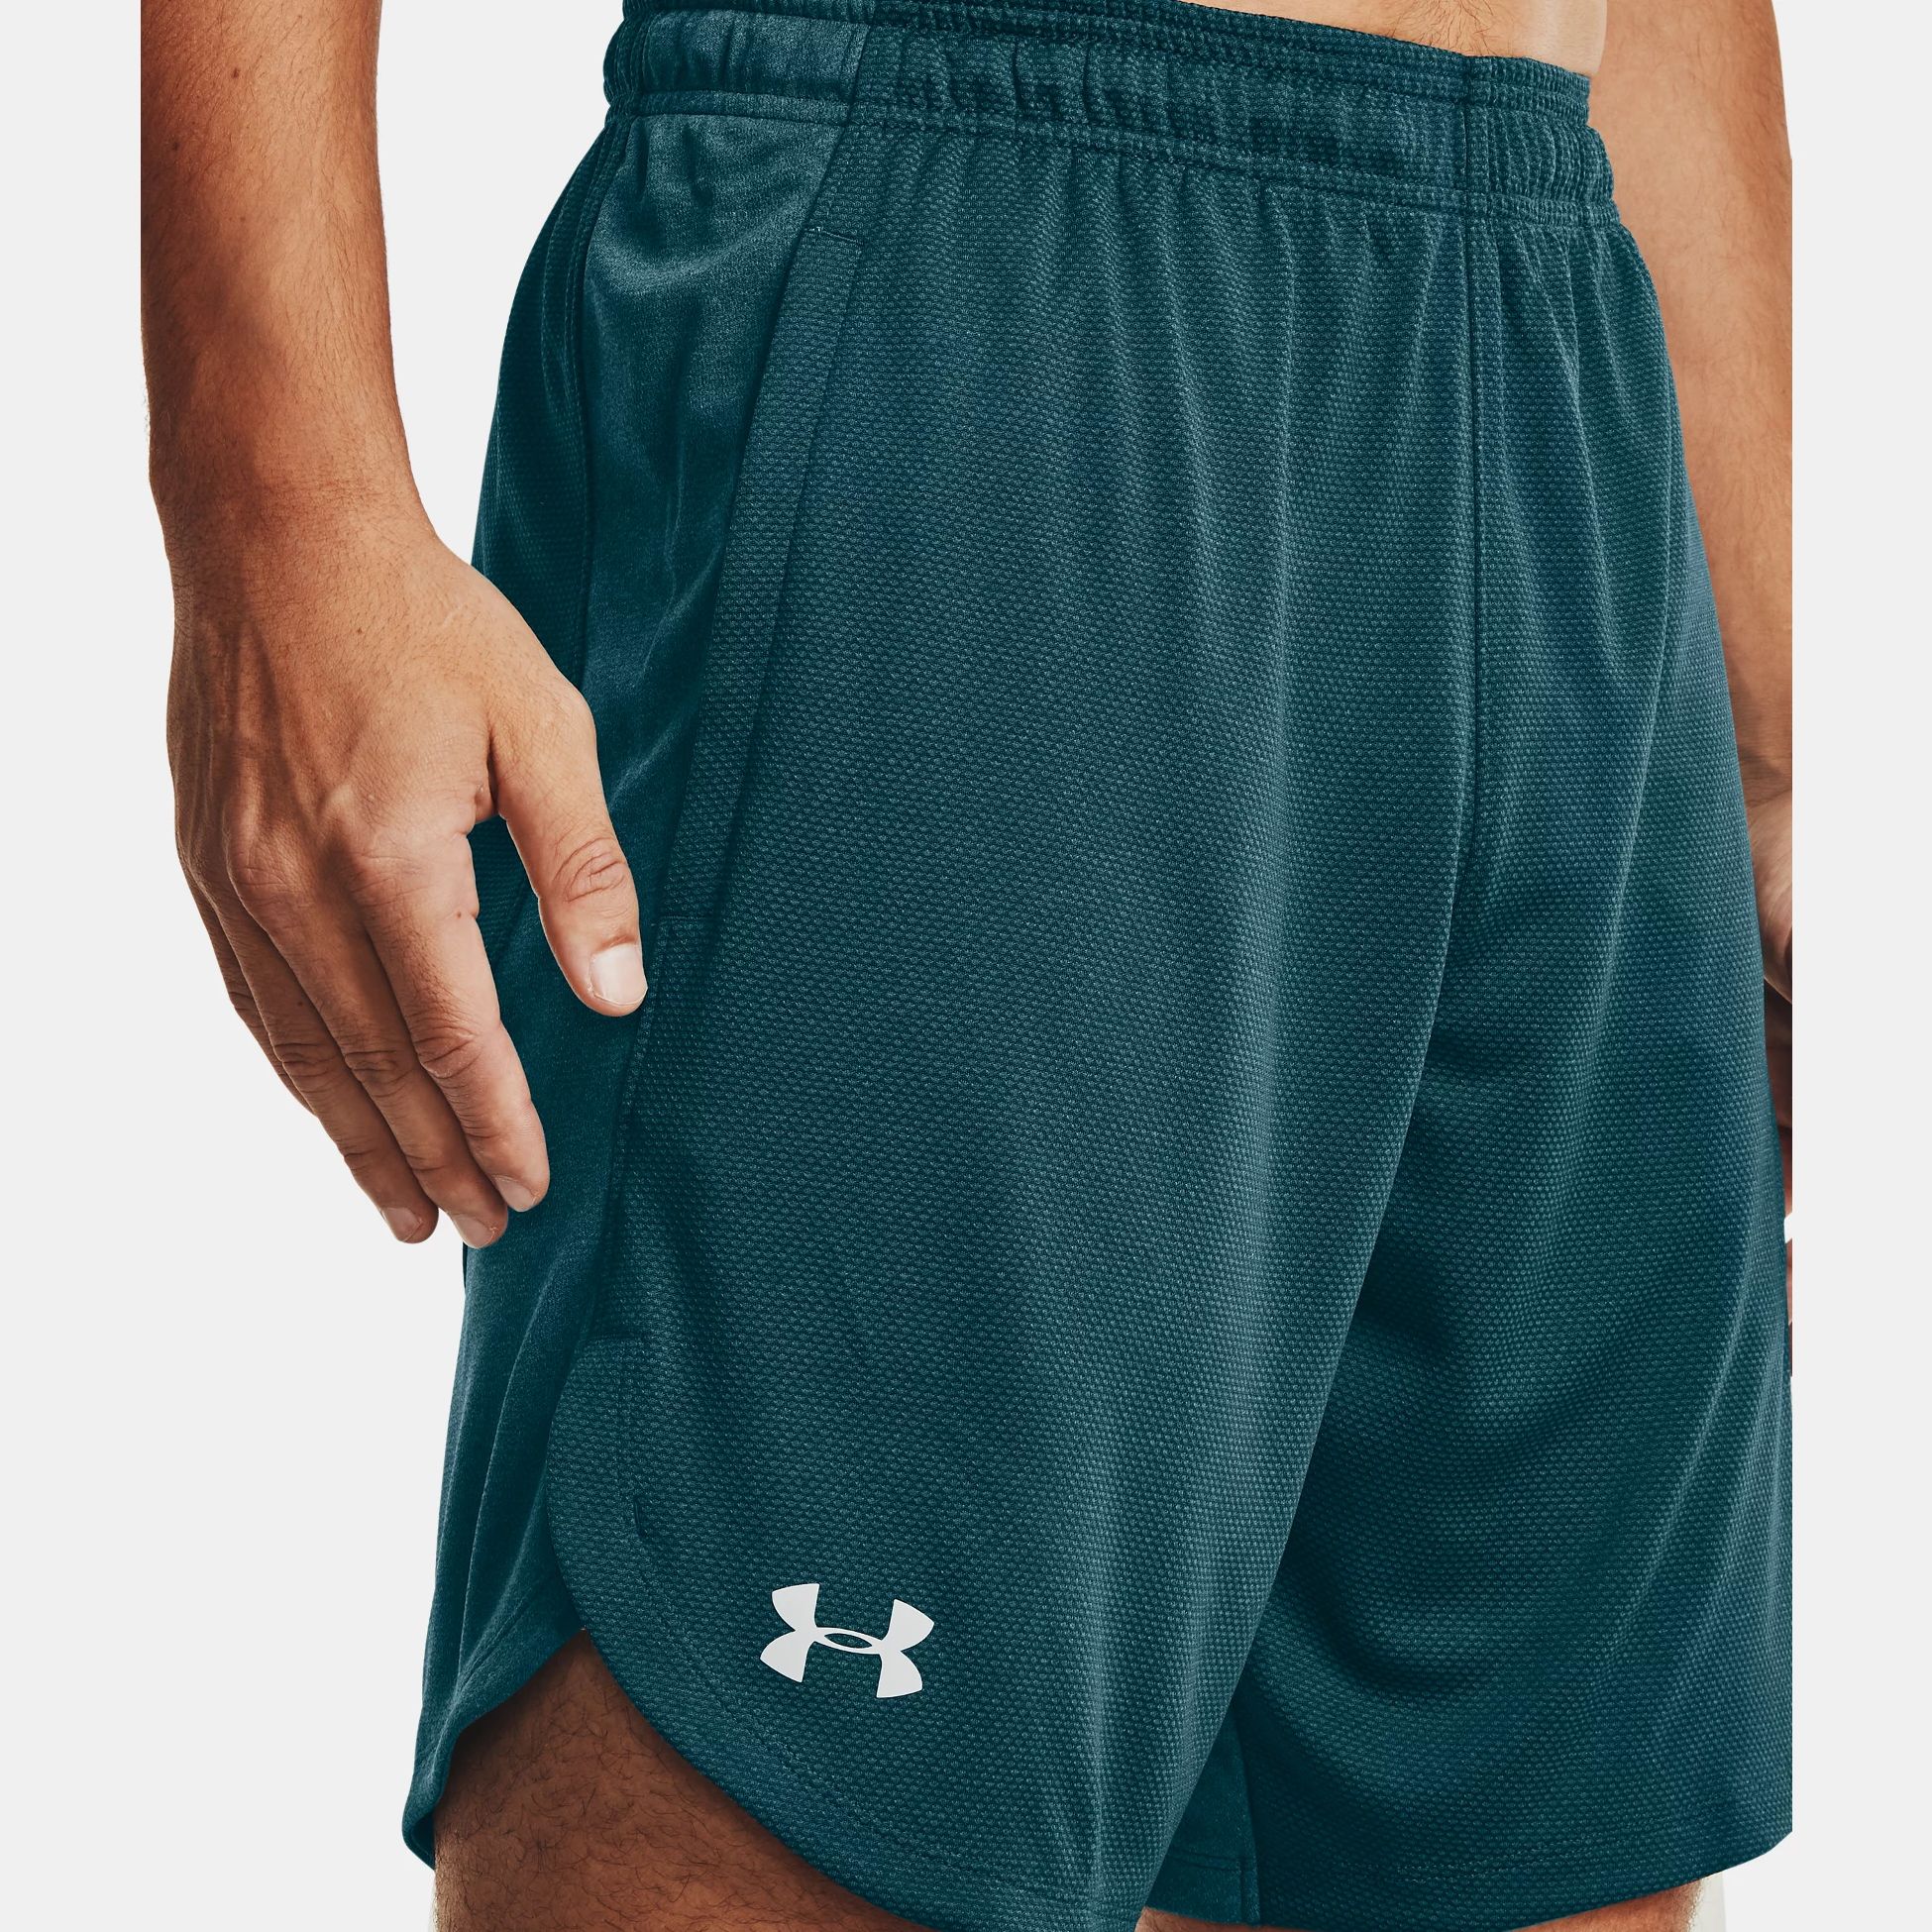 Shorts -  under armour UA Knit Performance Training Shorts 1641